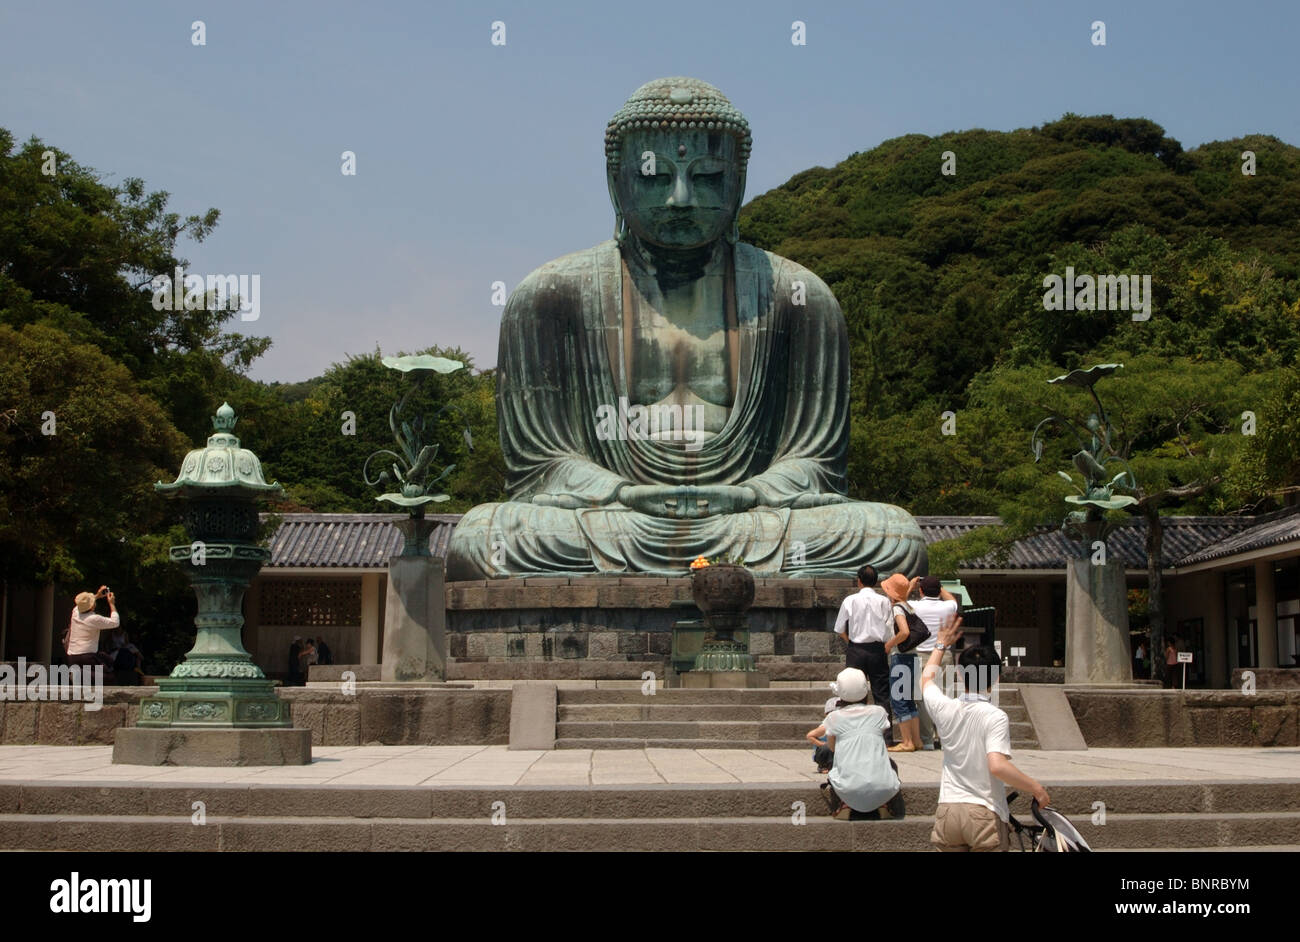 Die Bronze ist Kamakura großen Buddha, auch bekannt als Daibutsu, gedacht, um in Kamakura, Japan 1252 A.D. gegossen worden sind. Stockfoto